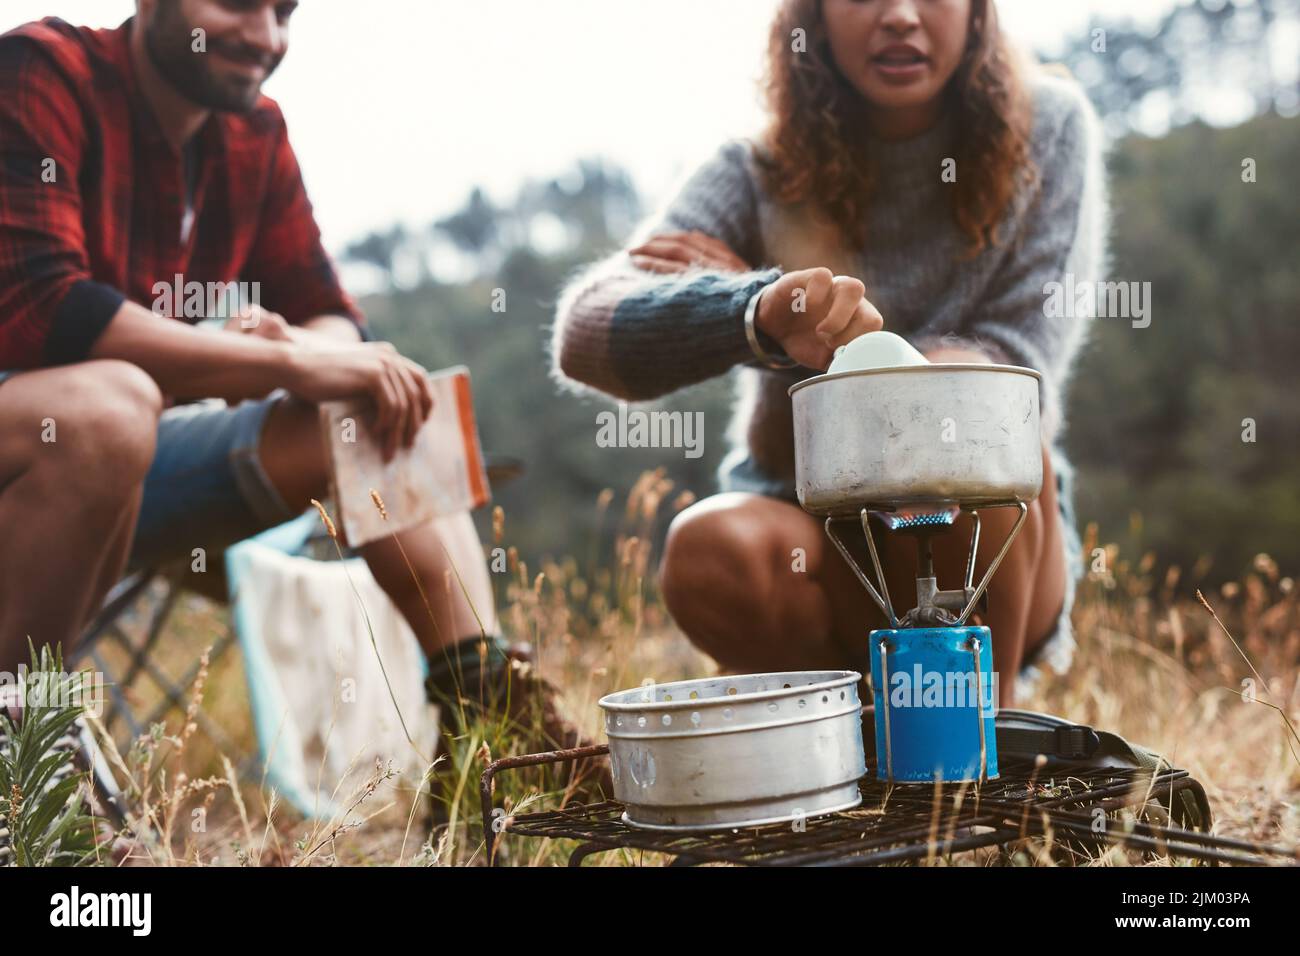 Junge Frau, die mit ihrem Freund zusammen auf einem Gasherd Essen zubereitete. Abenteuerliches junges Paar, das im Wald zeltet. Stockfoto